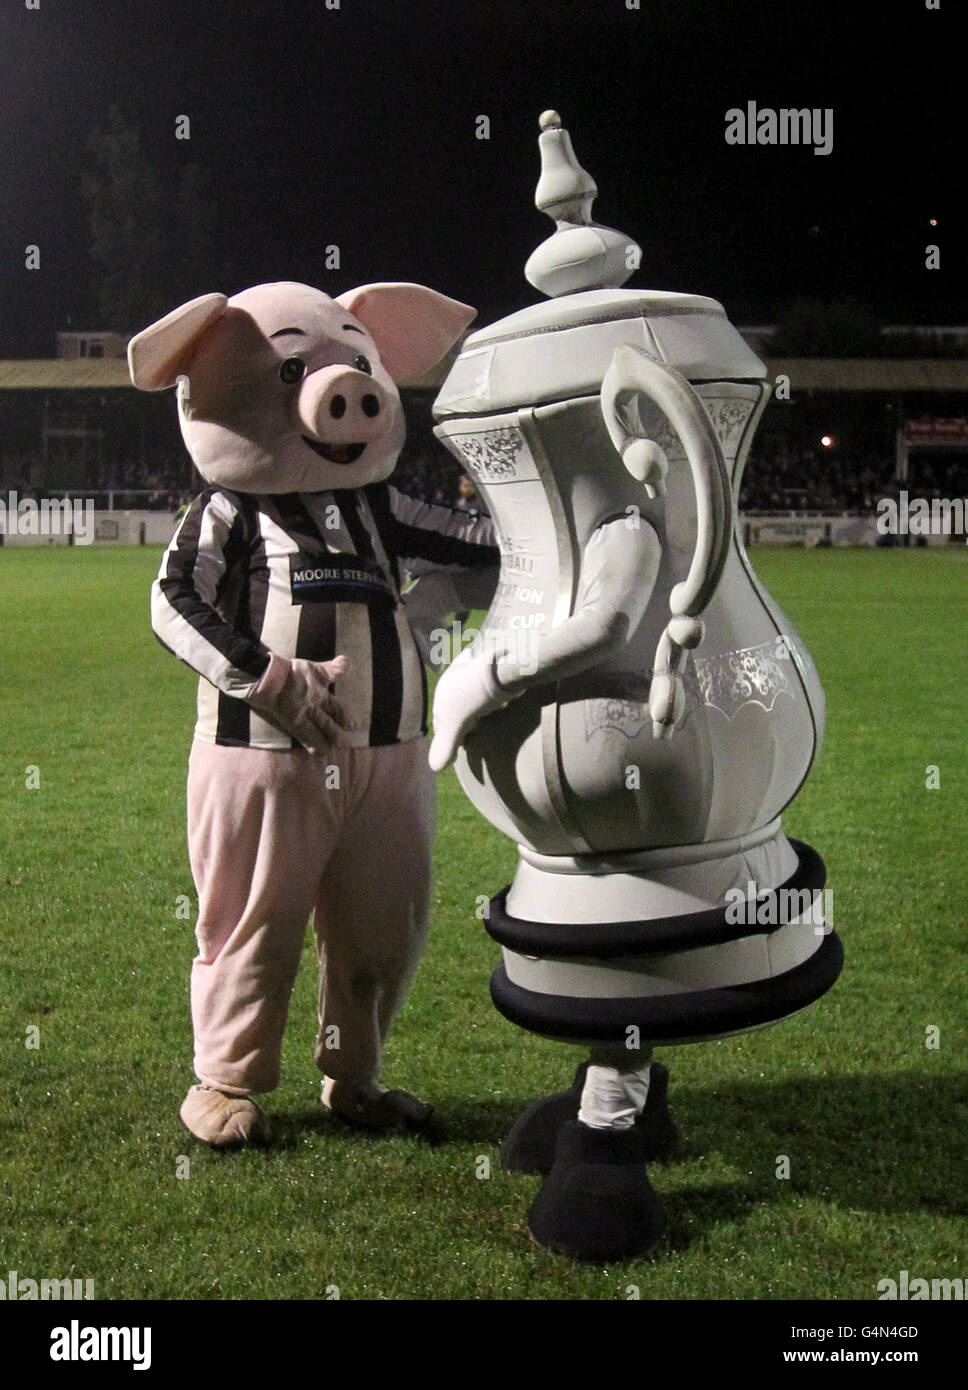 La mascotte de Bath City Bladud The Pig (à gauche) avec un FA Tasse mascotte pendant la moitié du temps Banque D'Images